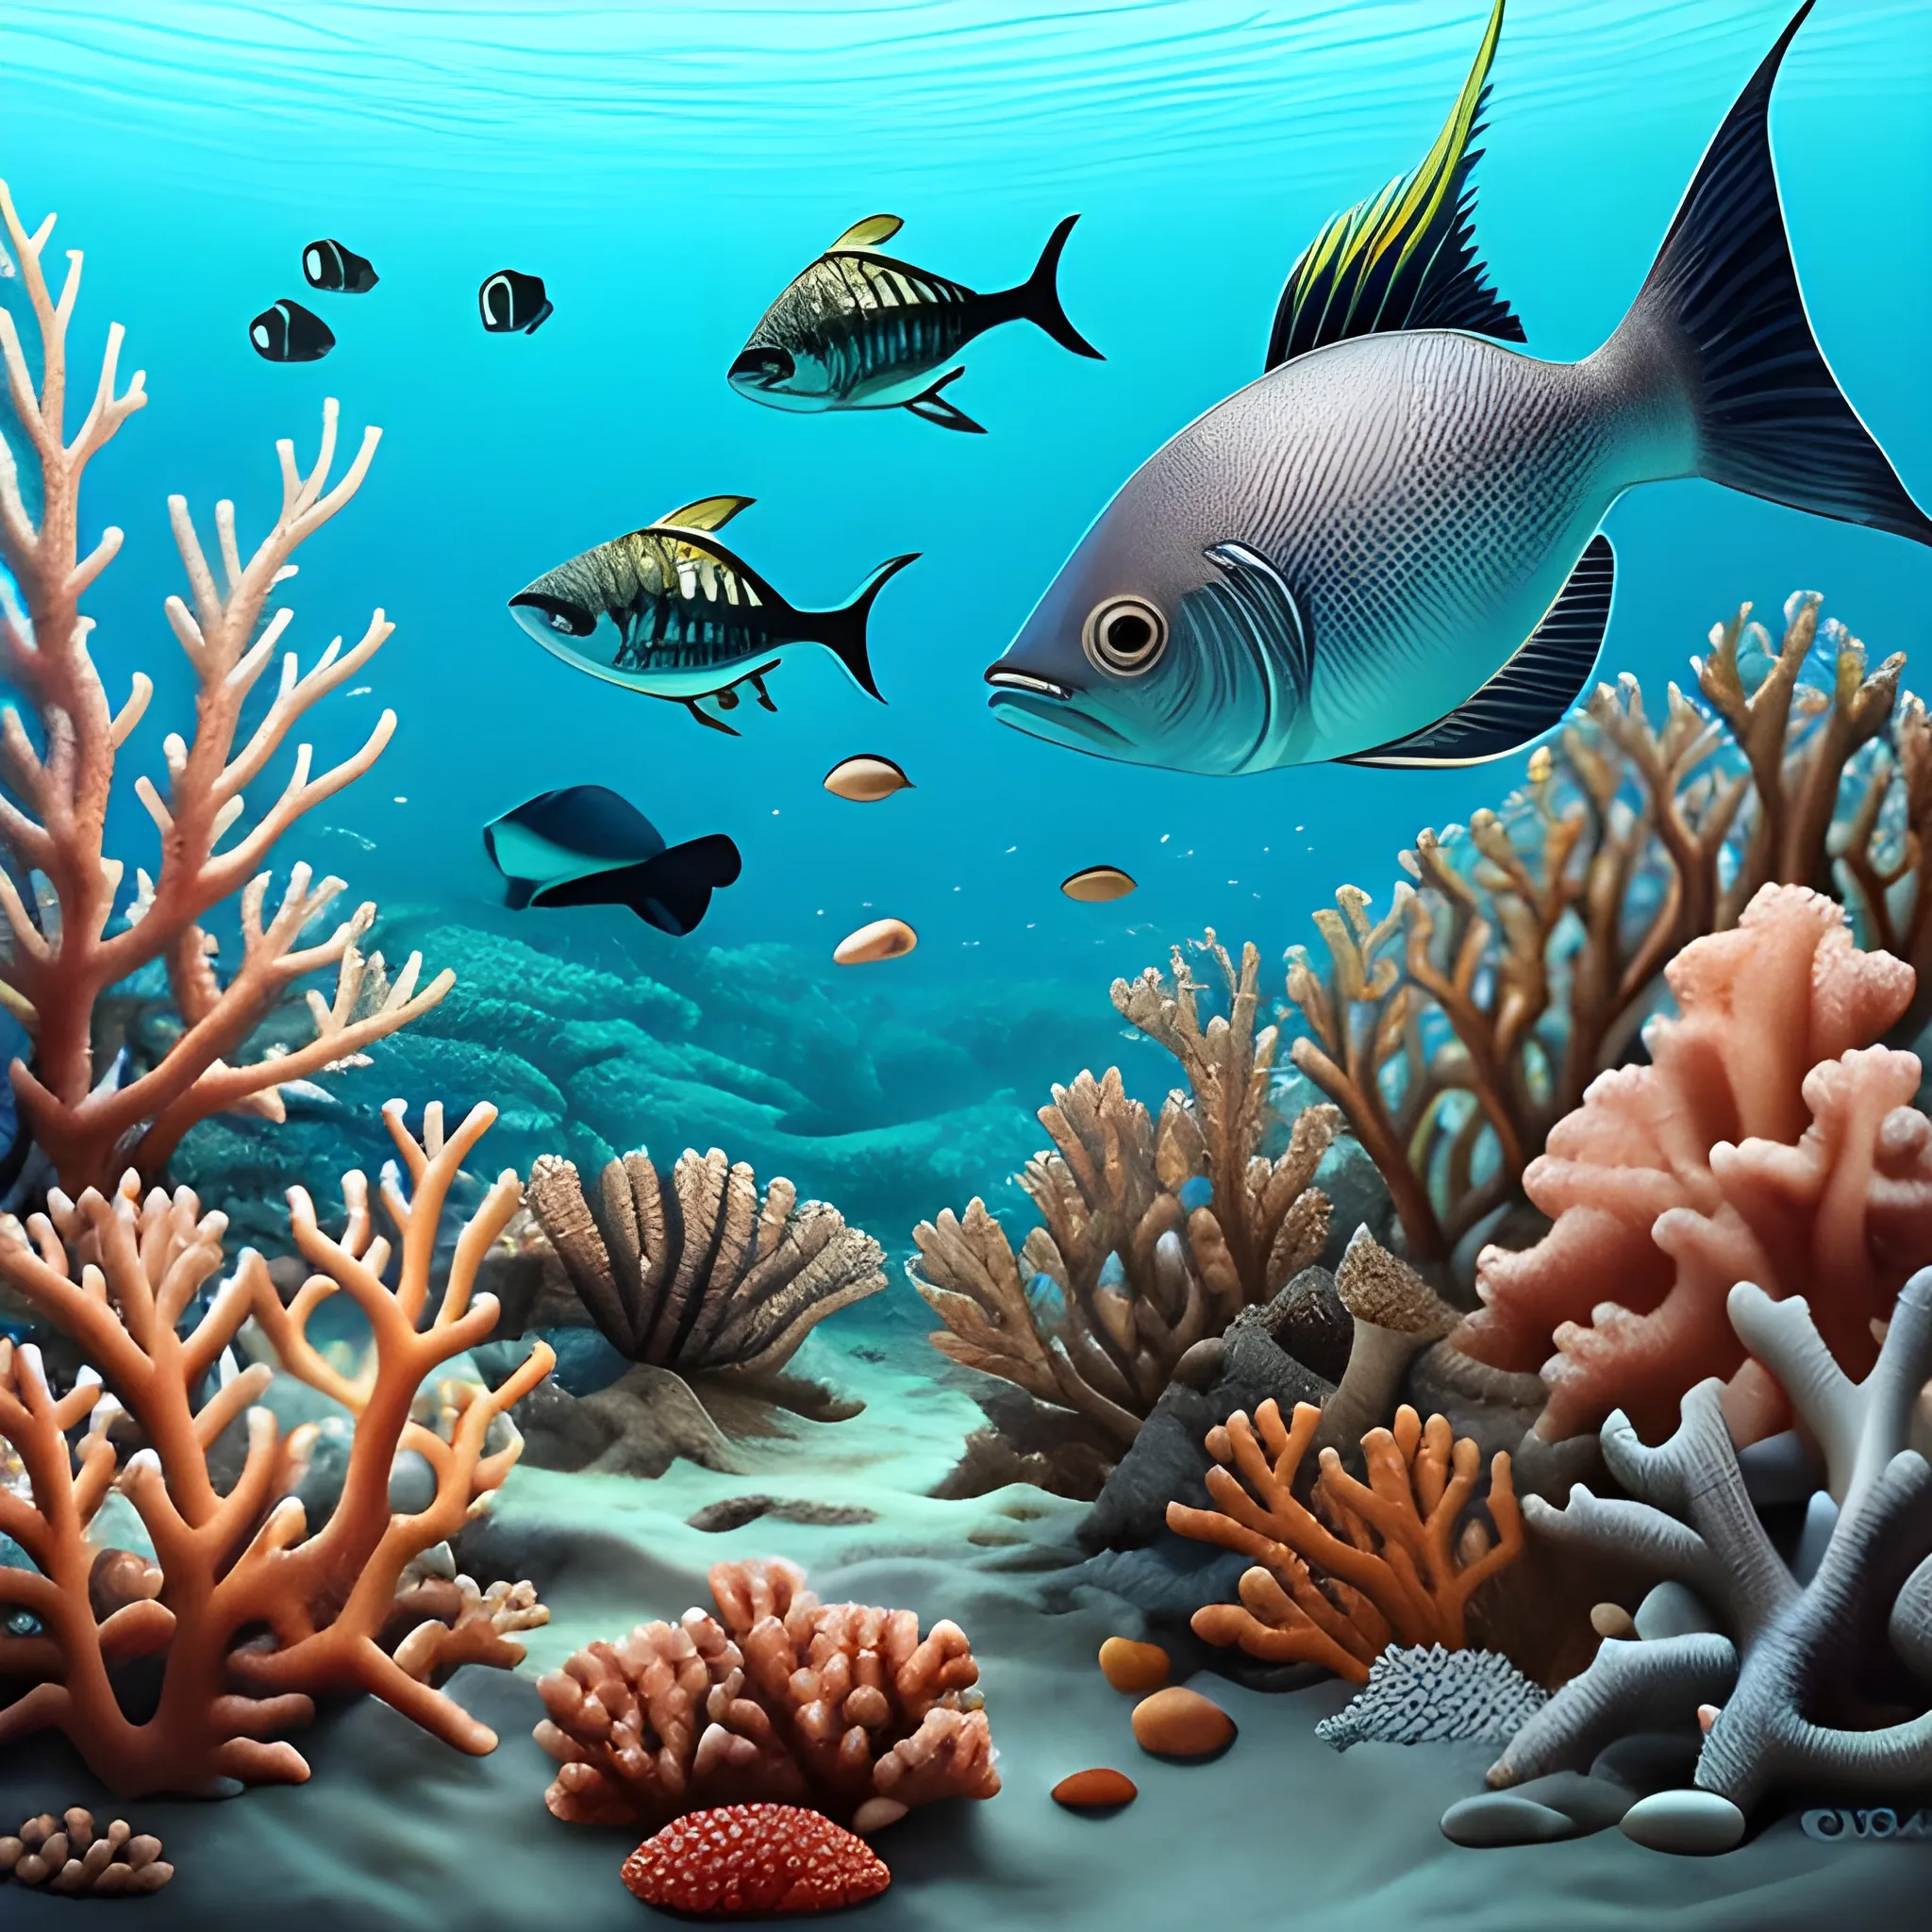 sea, fish ,coral, preserve

